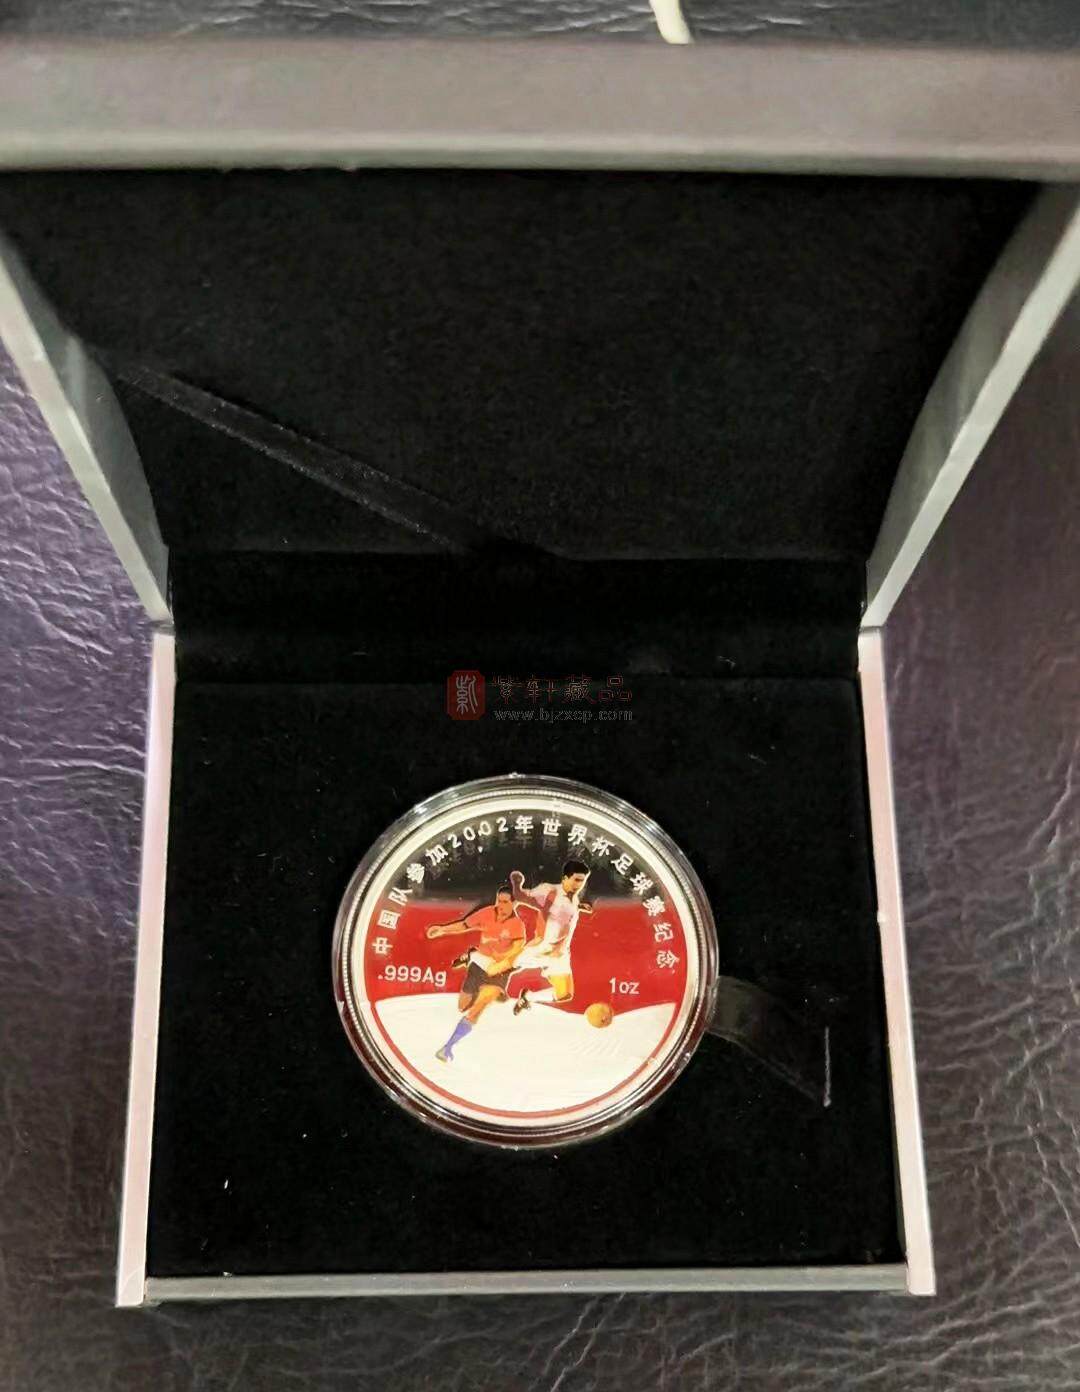 中国队参加2002年世界杯足球赛彩银纪念章